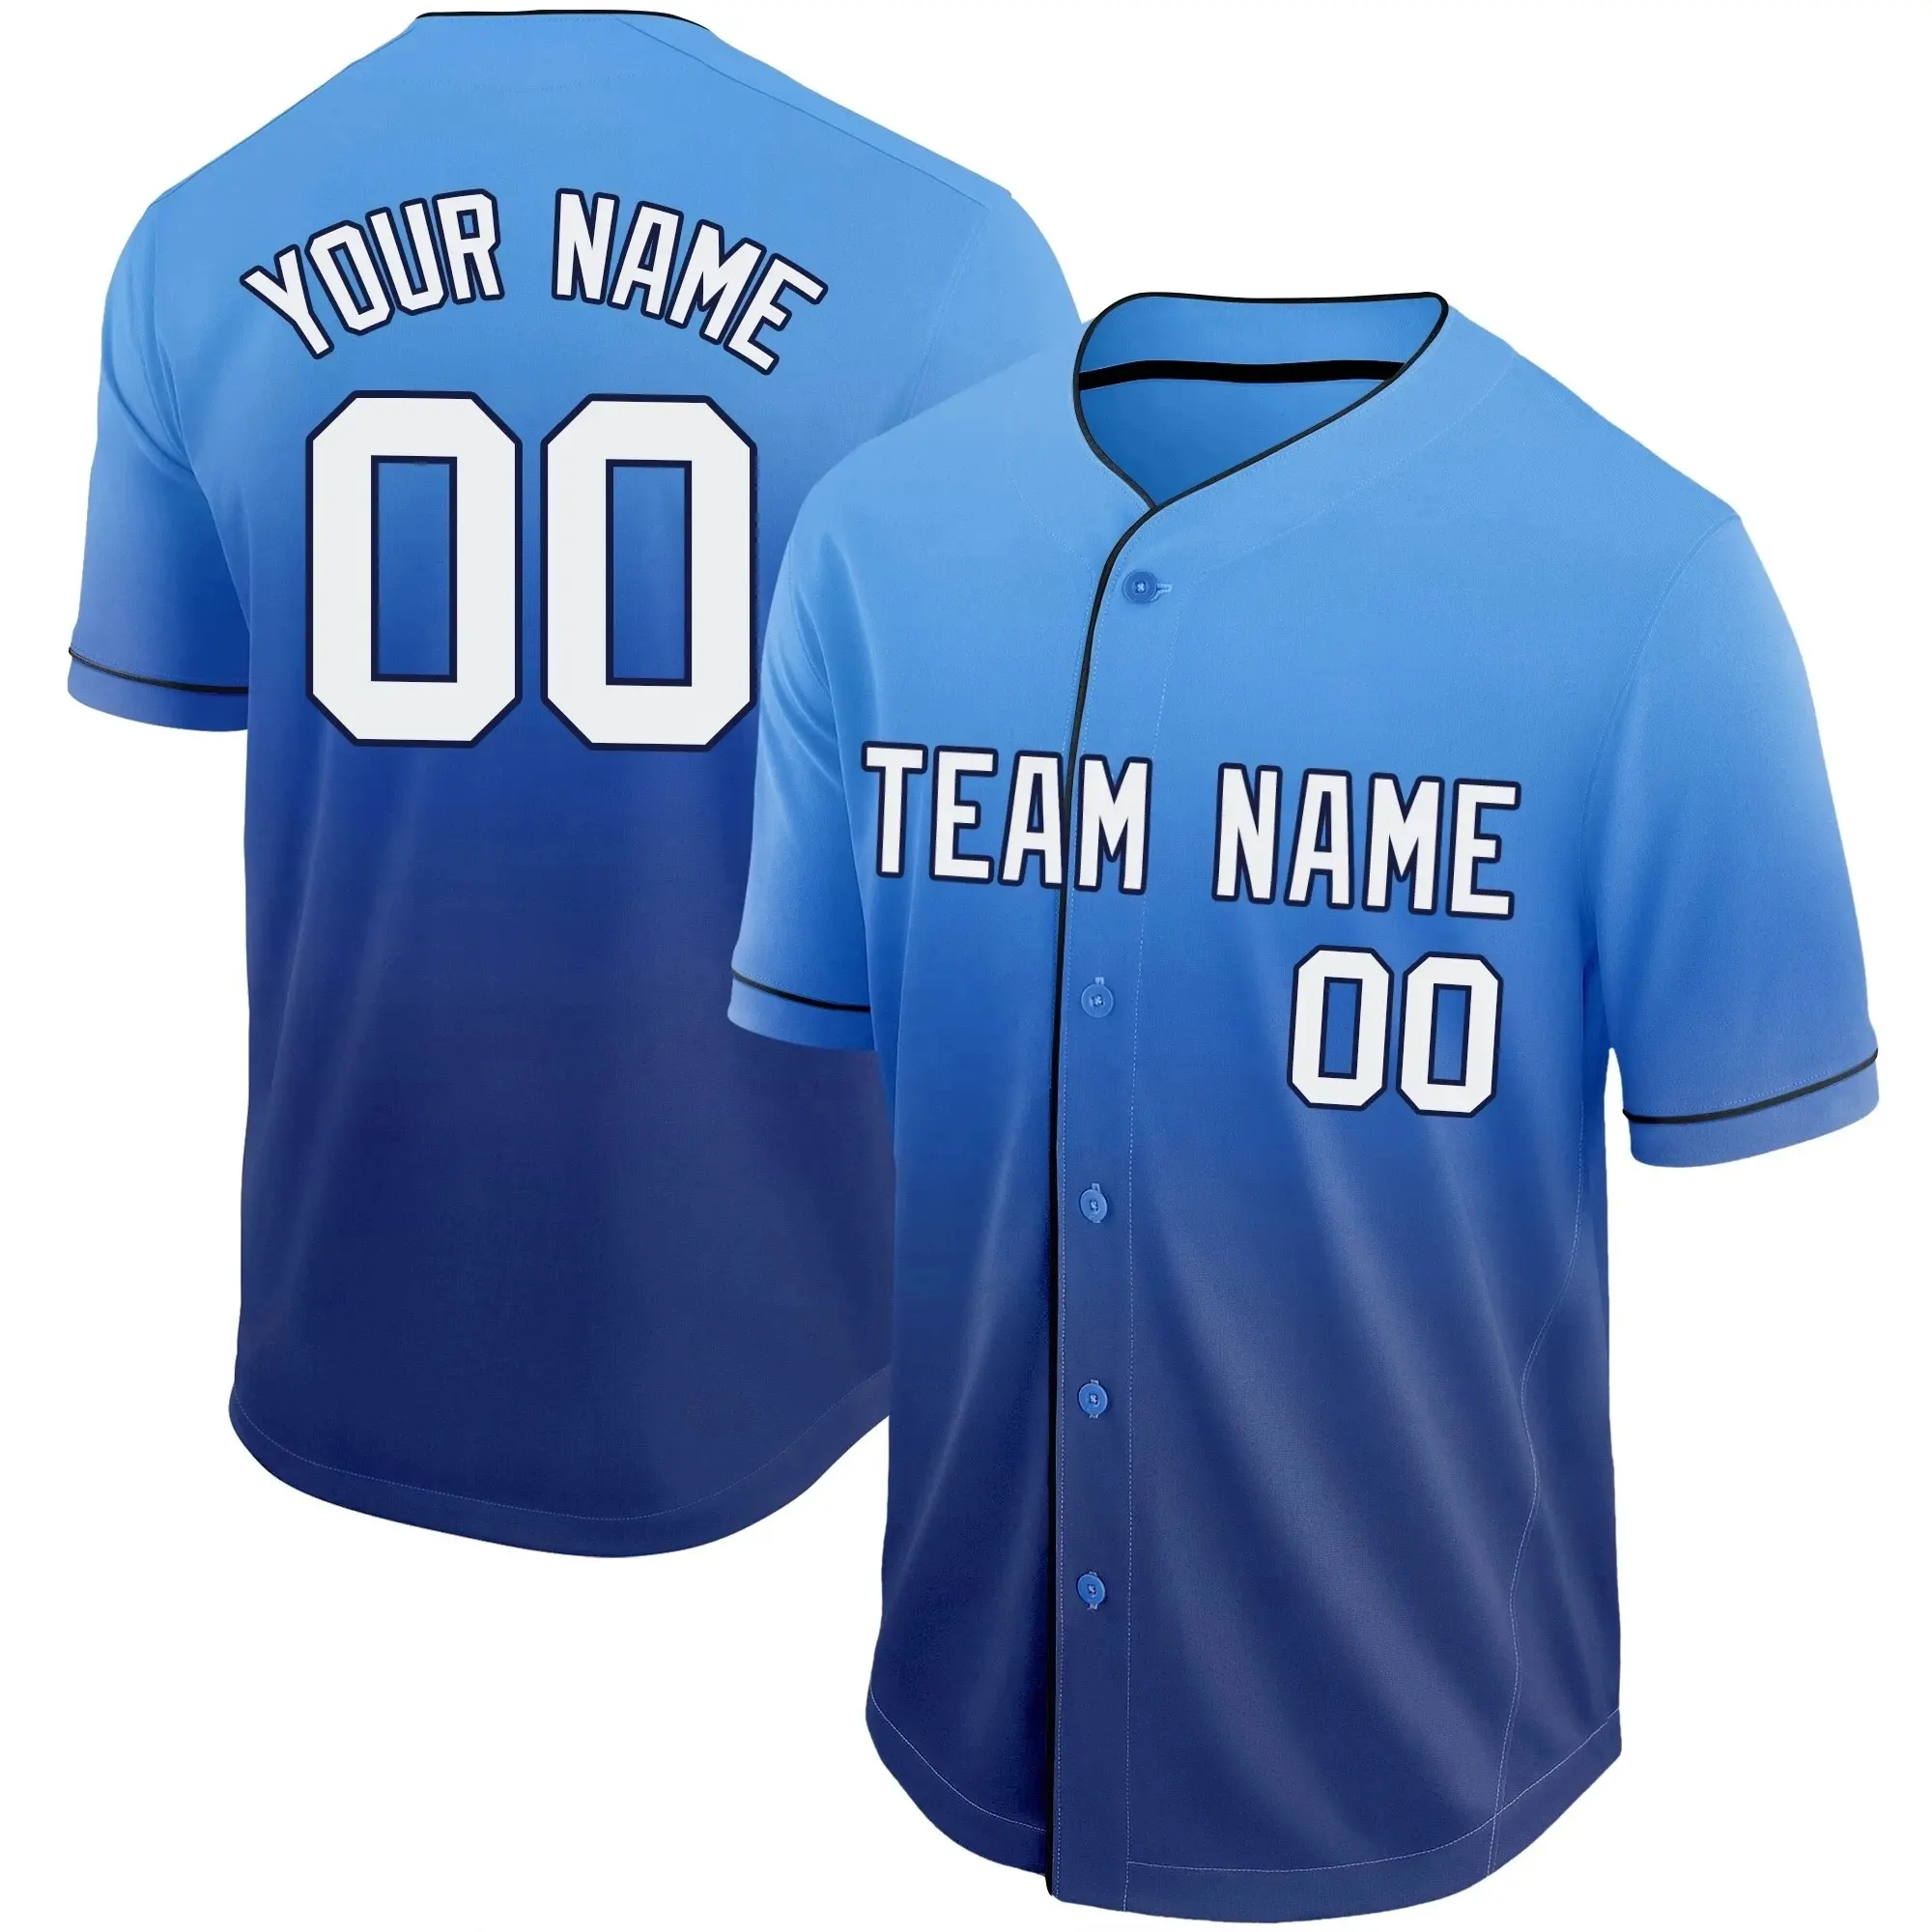 Uniforme Set Design Barato Seus Próprios Projetos Homens Azul Personalizado Sublimated Melhor Baseball & Softball Wear